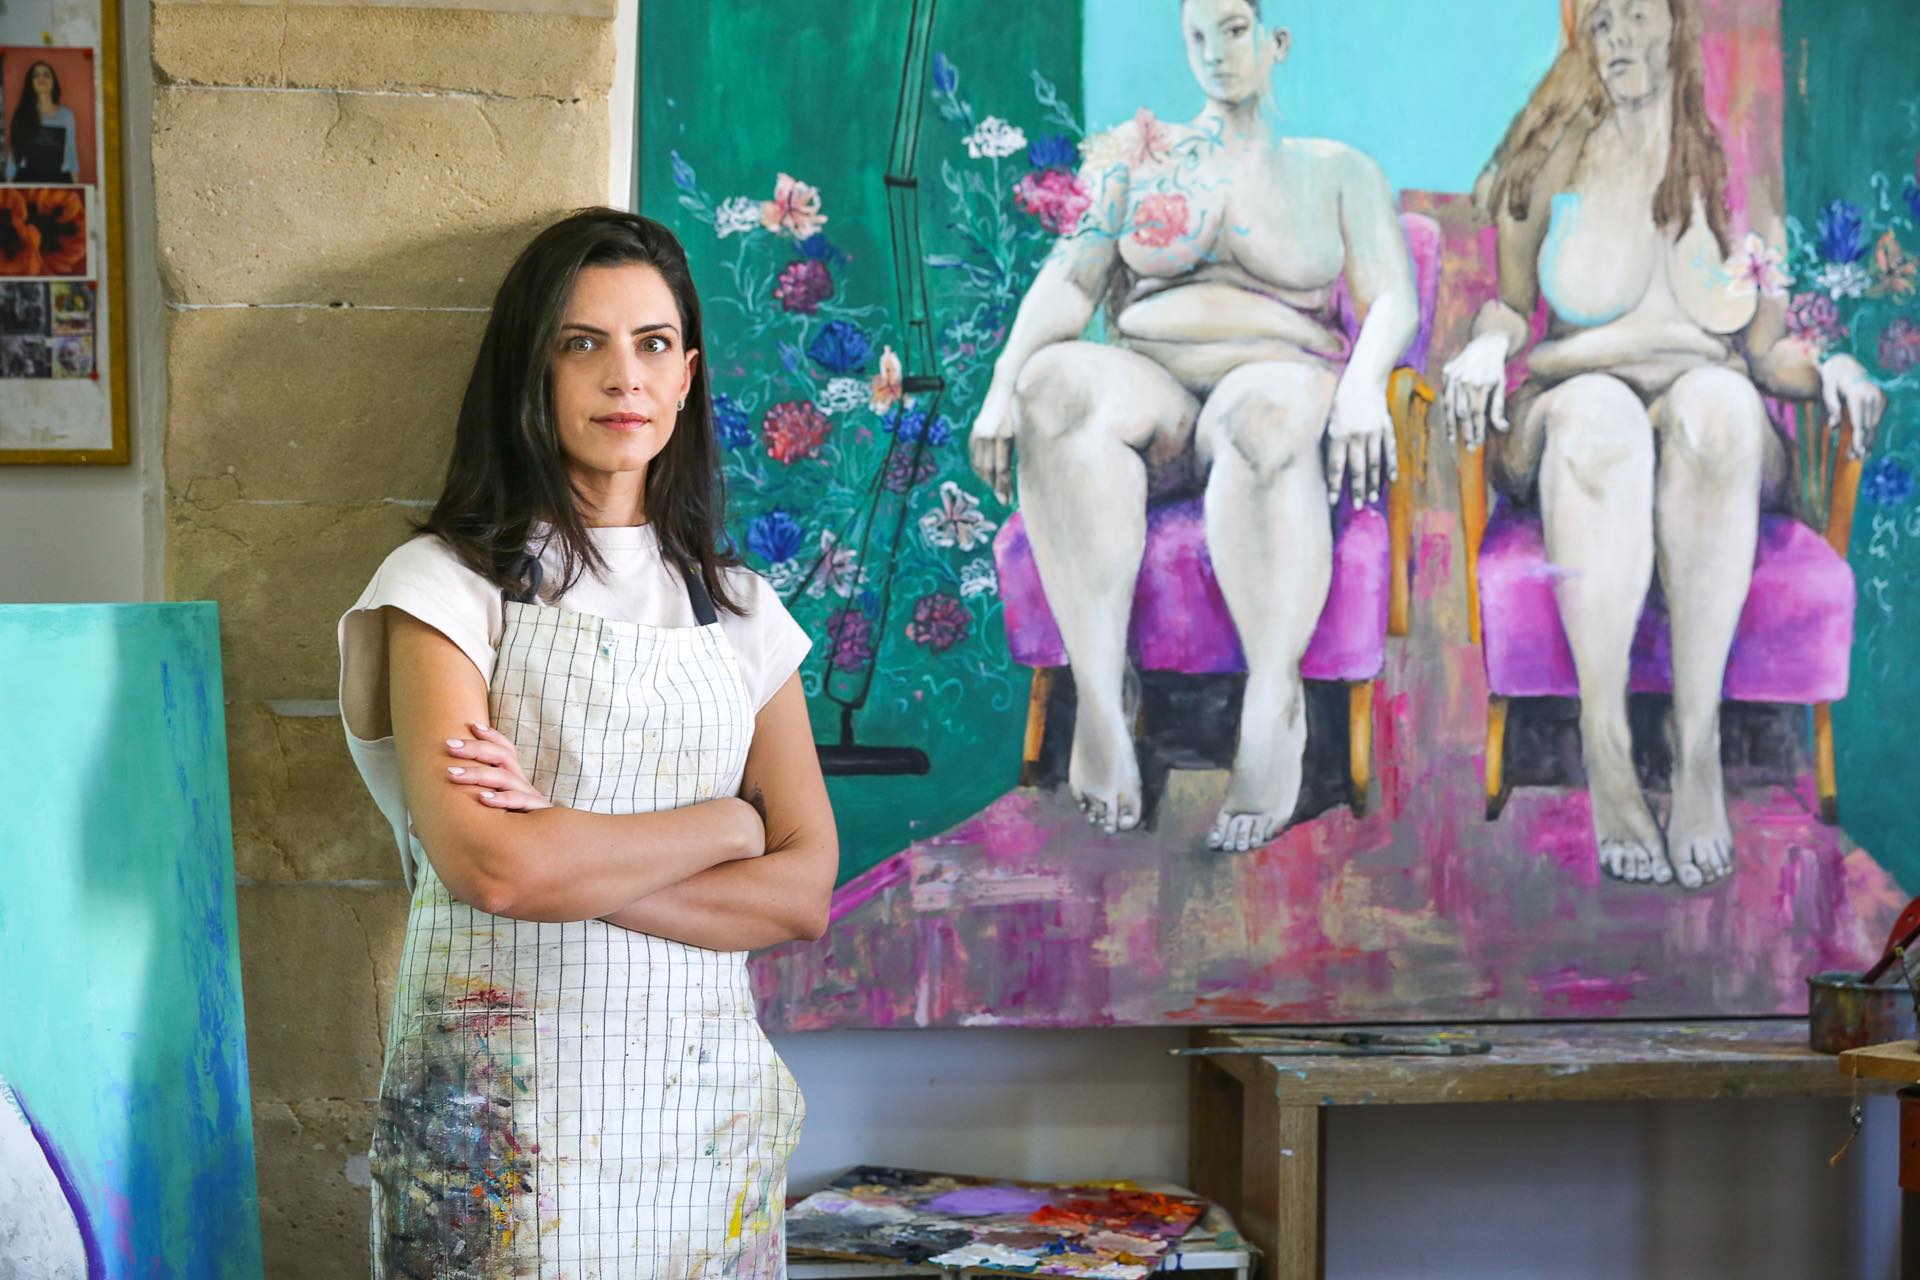 Το Κέντρο Σύγχρονης Τέχνης ΔΙΑΤΟΠΟΣ παρουσιάζει τη νέα εικαστική πρόταση της  Κατερίνας Σταύρου με τίτλο “Beyond Stereotypical Identities”